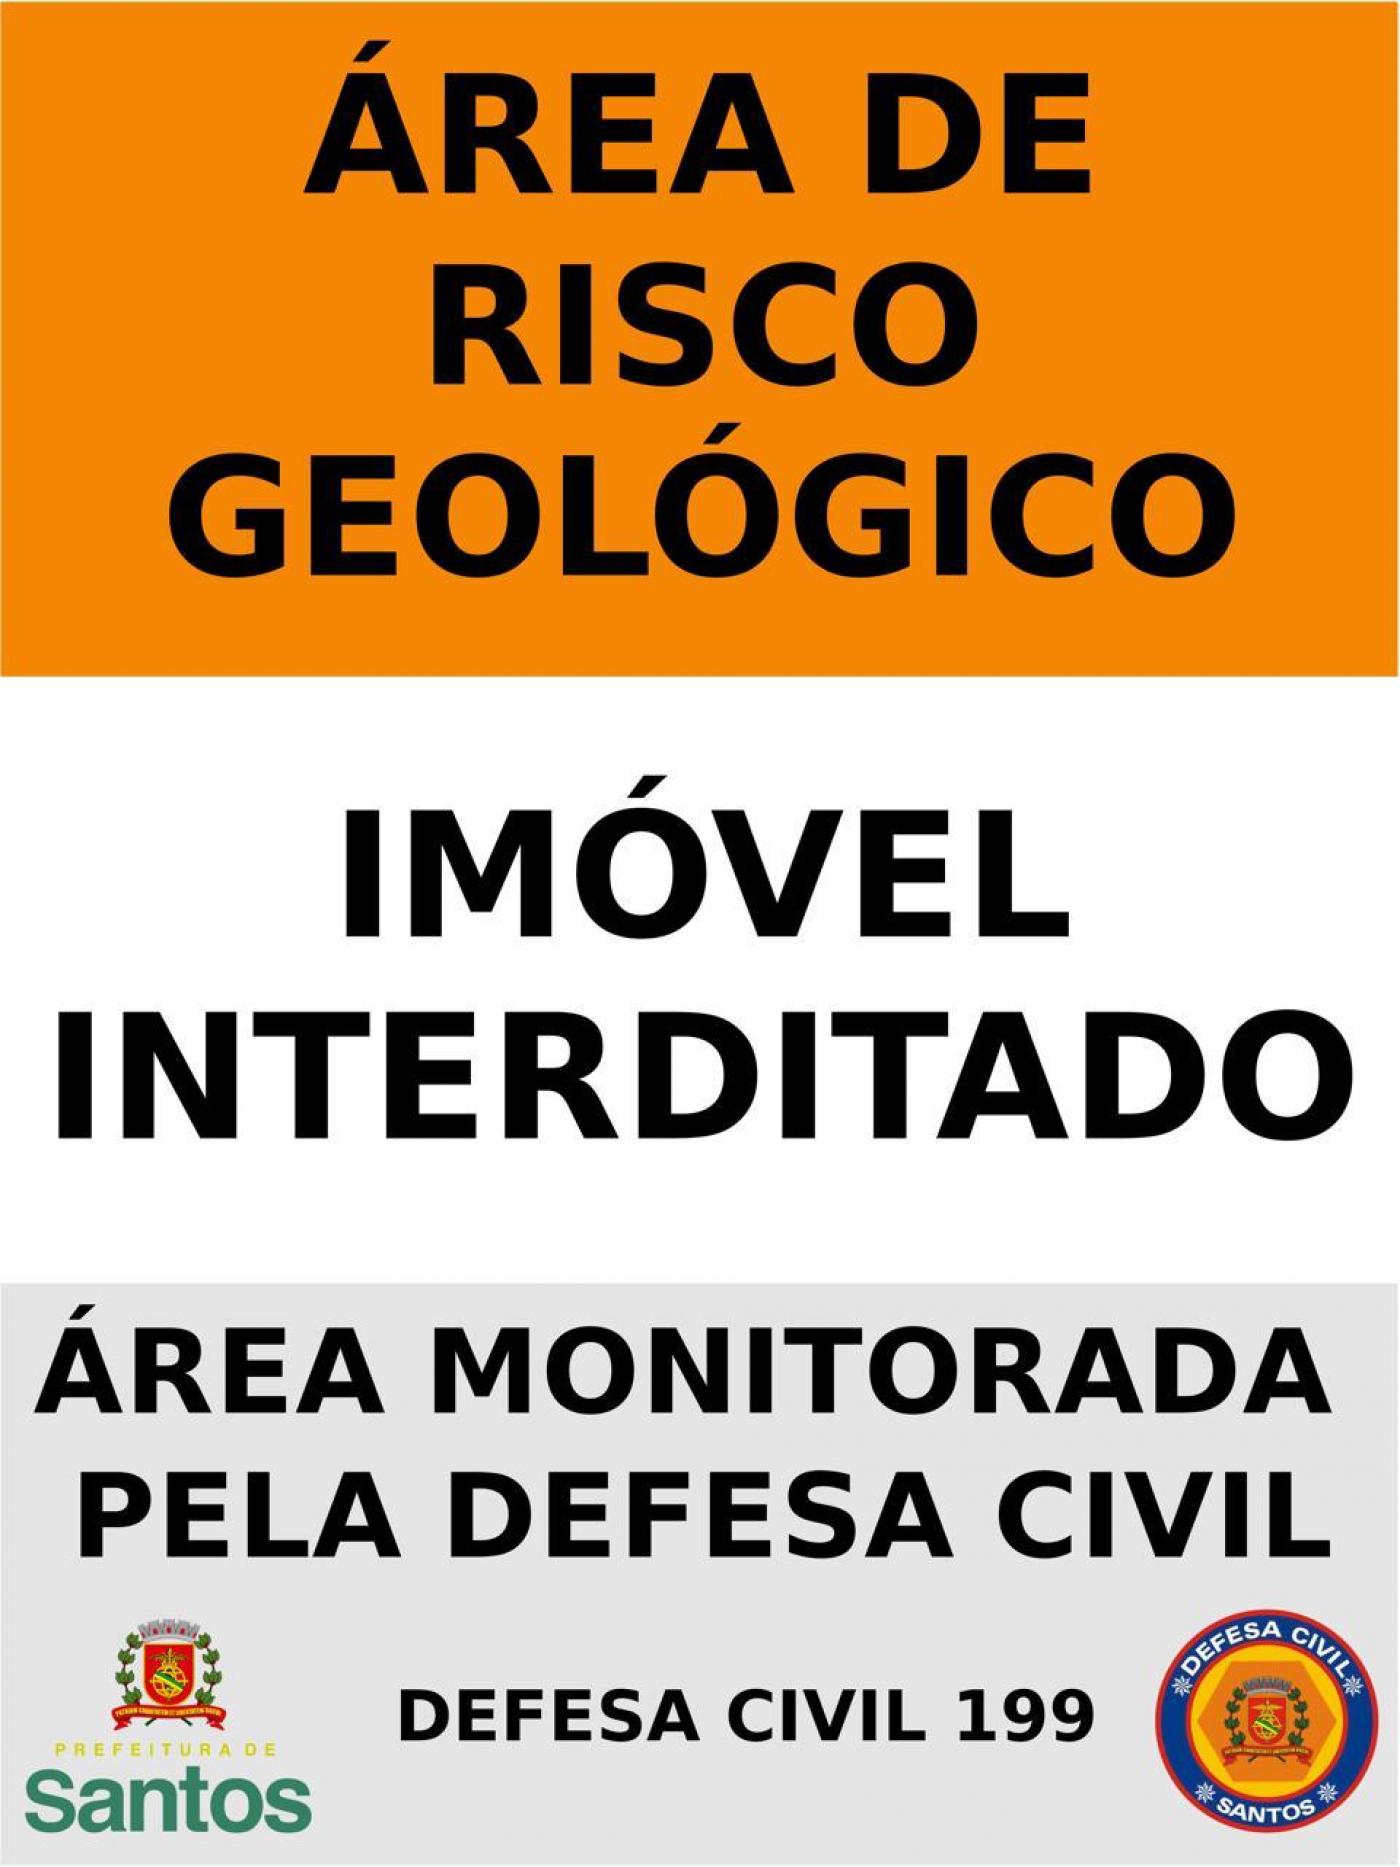 Aviso da defesa civil para afixar em casa. Está escrito: Área de Risco Geológico. Imóvel Interditado. Área monitorada pela Defesa Civil 199